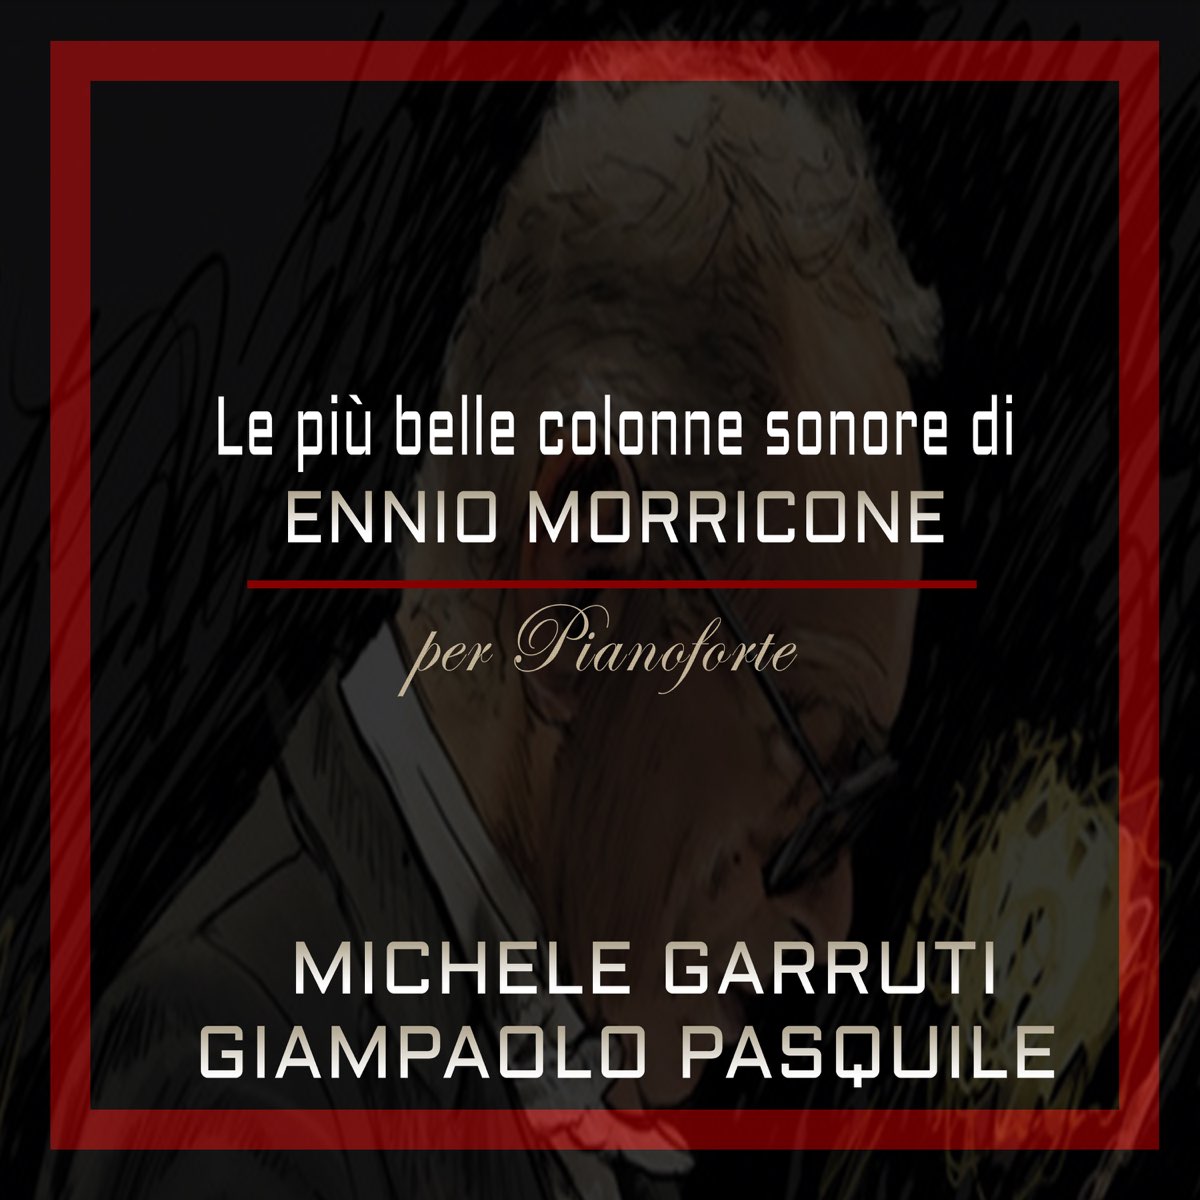 Le più belle colonne sonore di Ennio Morricone per pianoforte: La grande  musica del cinema di Michele Garruti & Giampaolo Pasquile su Apple Music